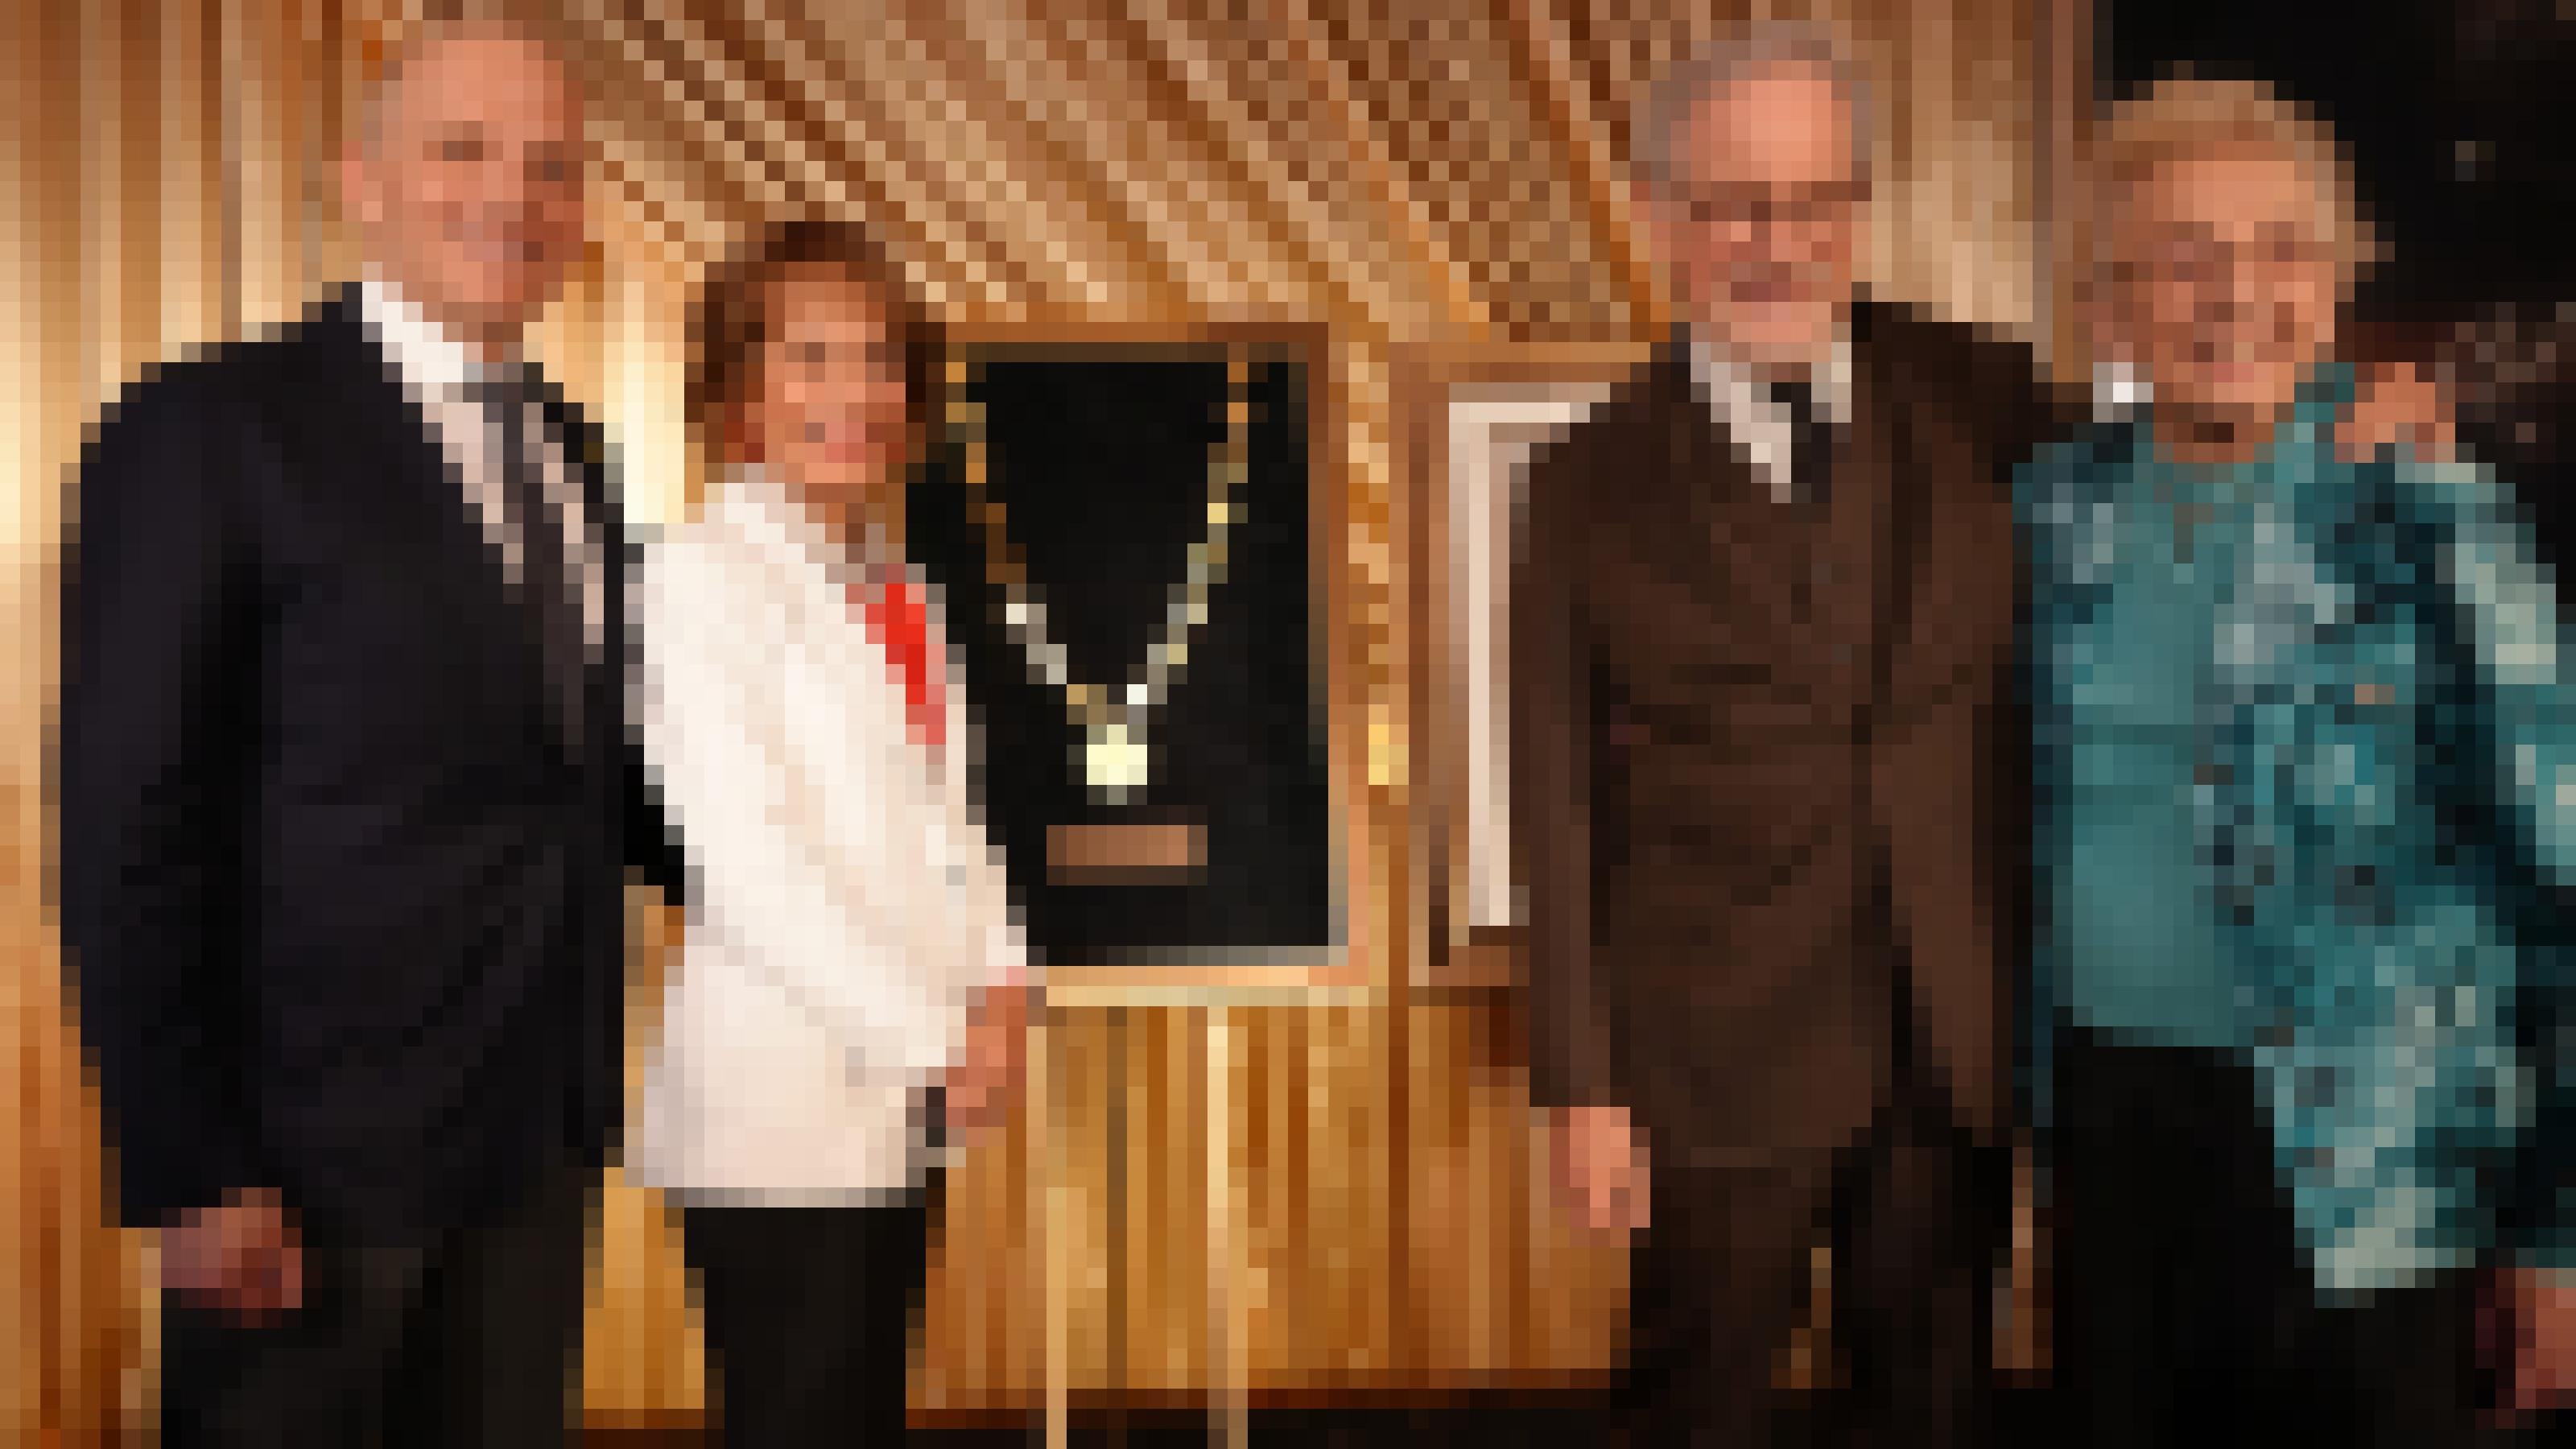 Regisseur Steven Spielberg legt den Arm um die 93 Jahre alte Celina Biniaz, eine Holocaust Überlebende. Sie stehen auf einer Bühne vor goldenem Vorhang mit zwei anderen Ehrengästen, USC-Präsidentin Carol Folt und USC Shoah Foundation Vorstandsmitglied Joel Citron.